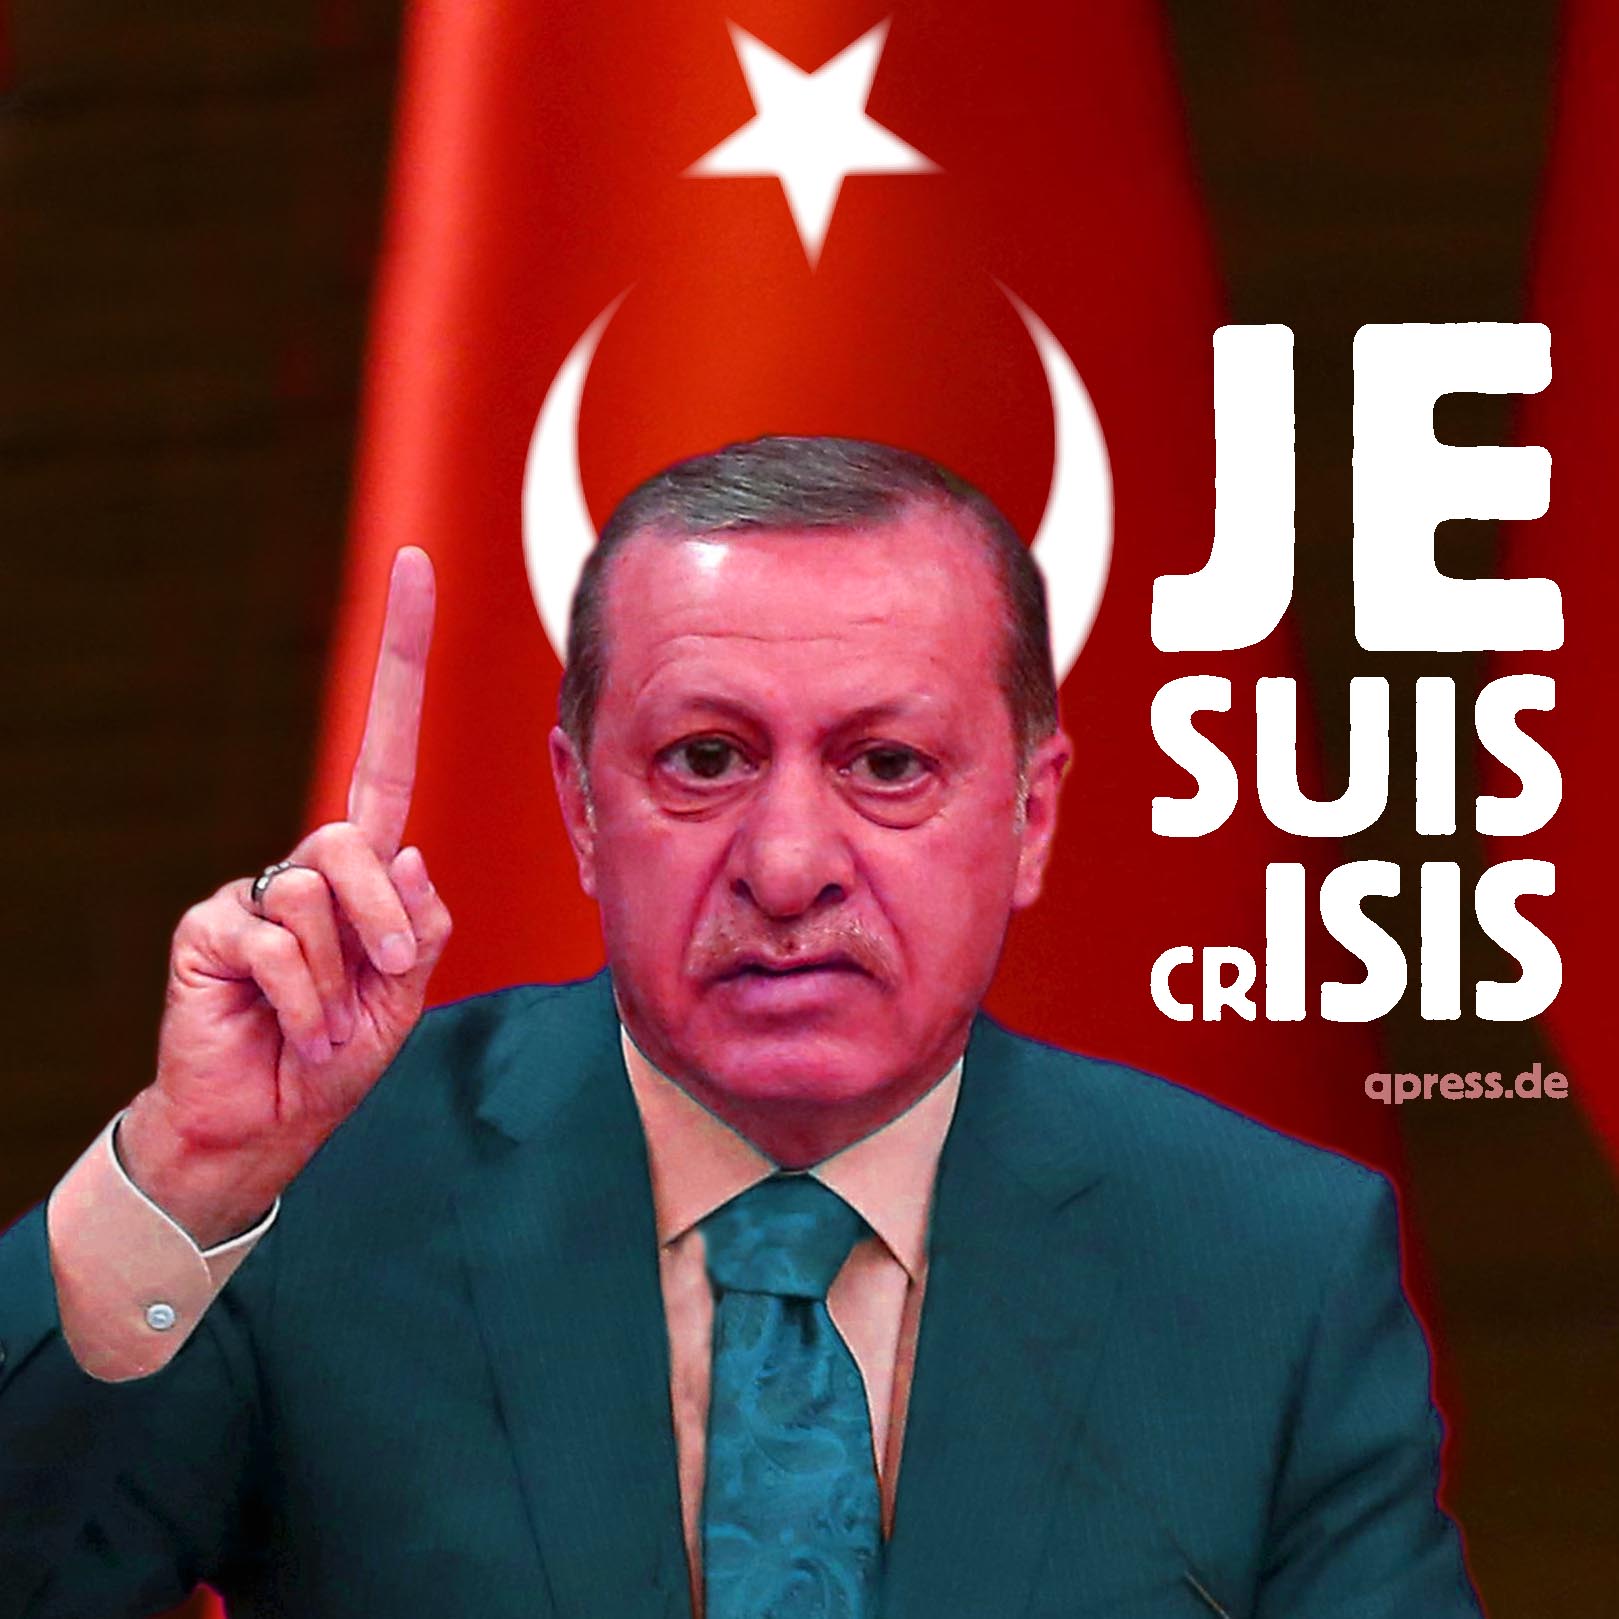 Erdogan-je-suis-crisis-despot-diktator-Machtmensch